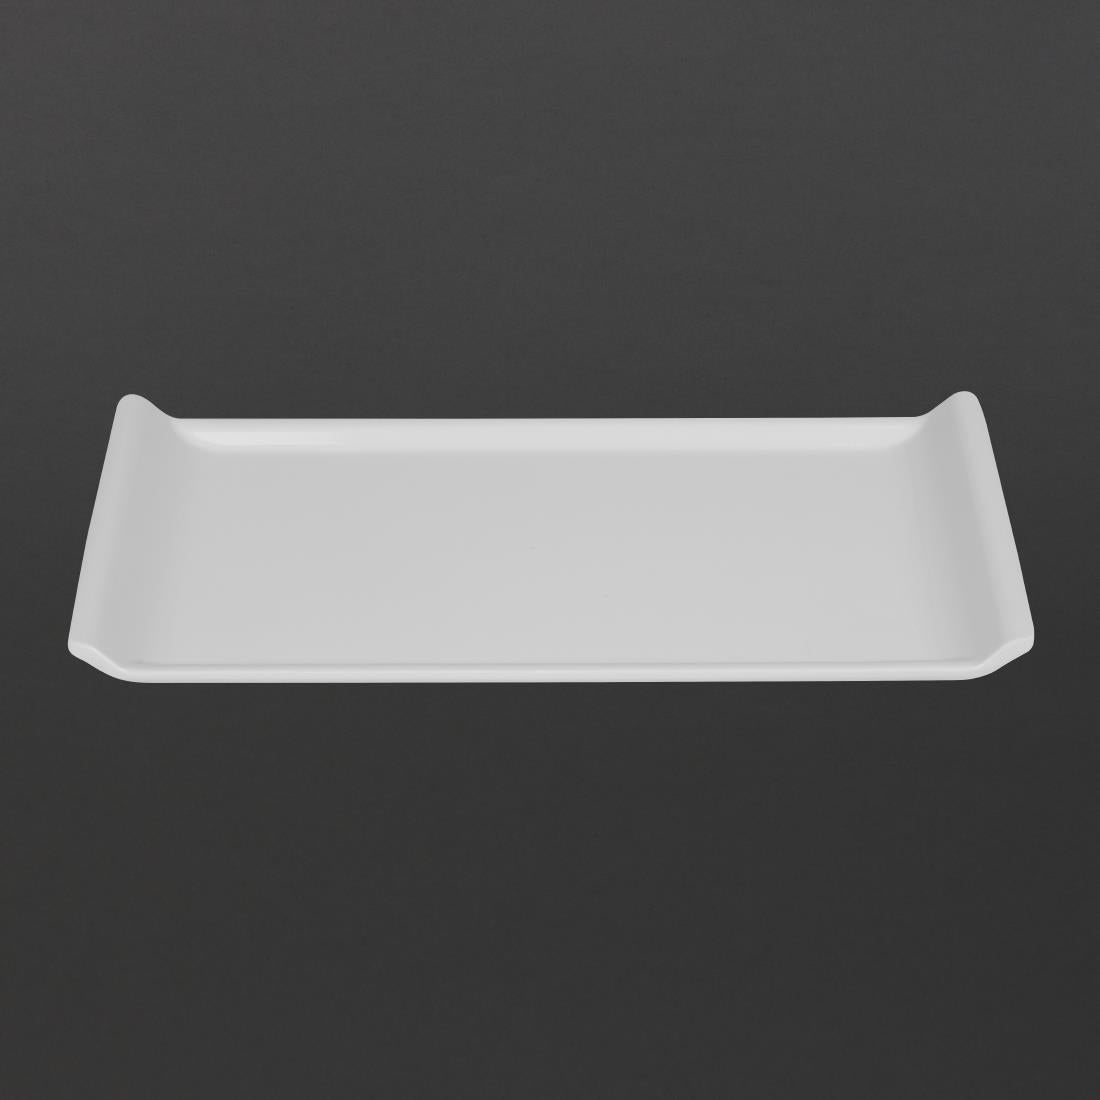 Kristallon Melamine Platter White 300 x 150mm JD Catering Equipment Solutions Ltd